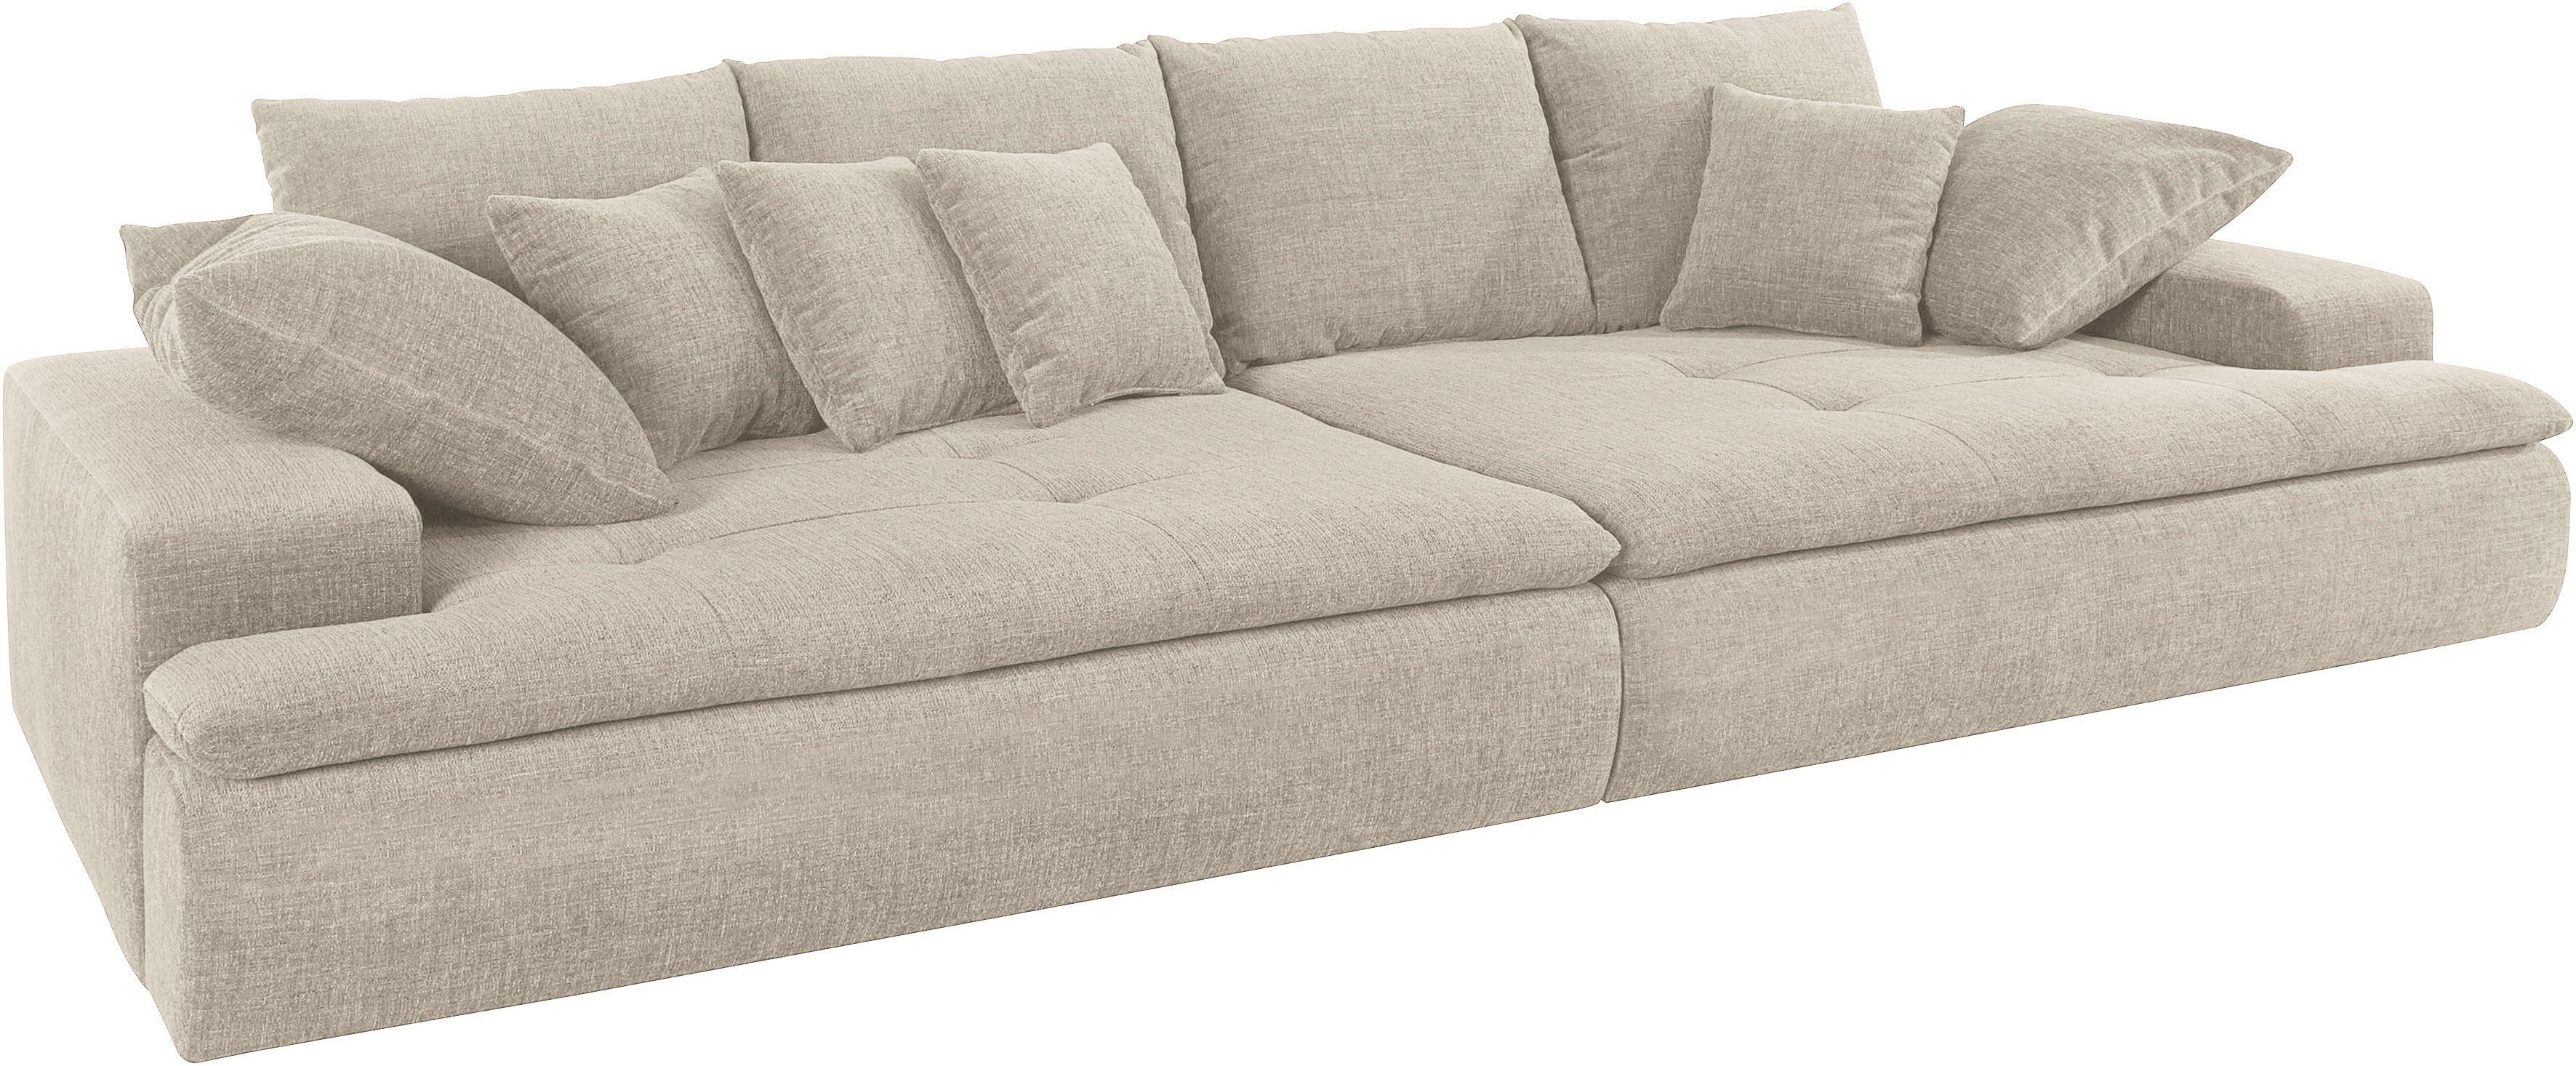 Mr. Couch Big-Sofa Haiti, wahlweise mit Kaltschaum (140kg Belastung/Sitz)  und AquaClean-Stoff, wahlweise mit Kaltschaum (140kg Sitzbelastung)